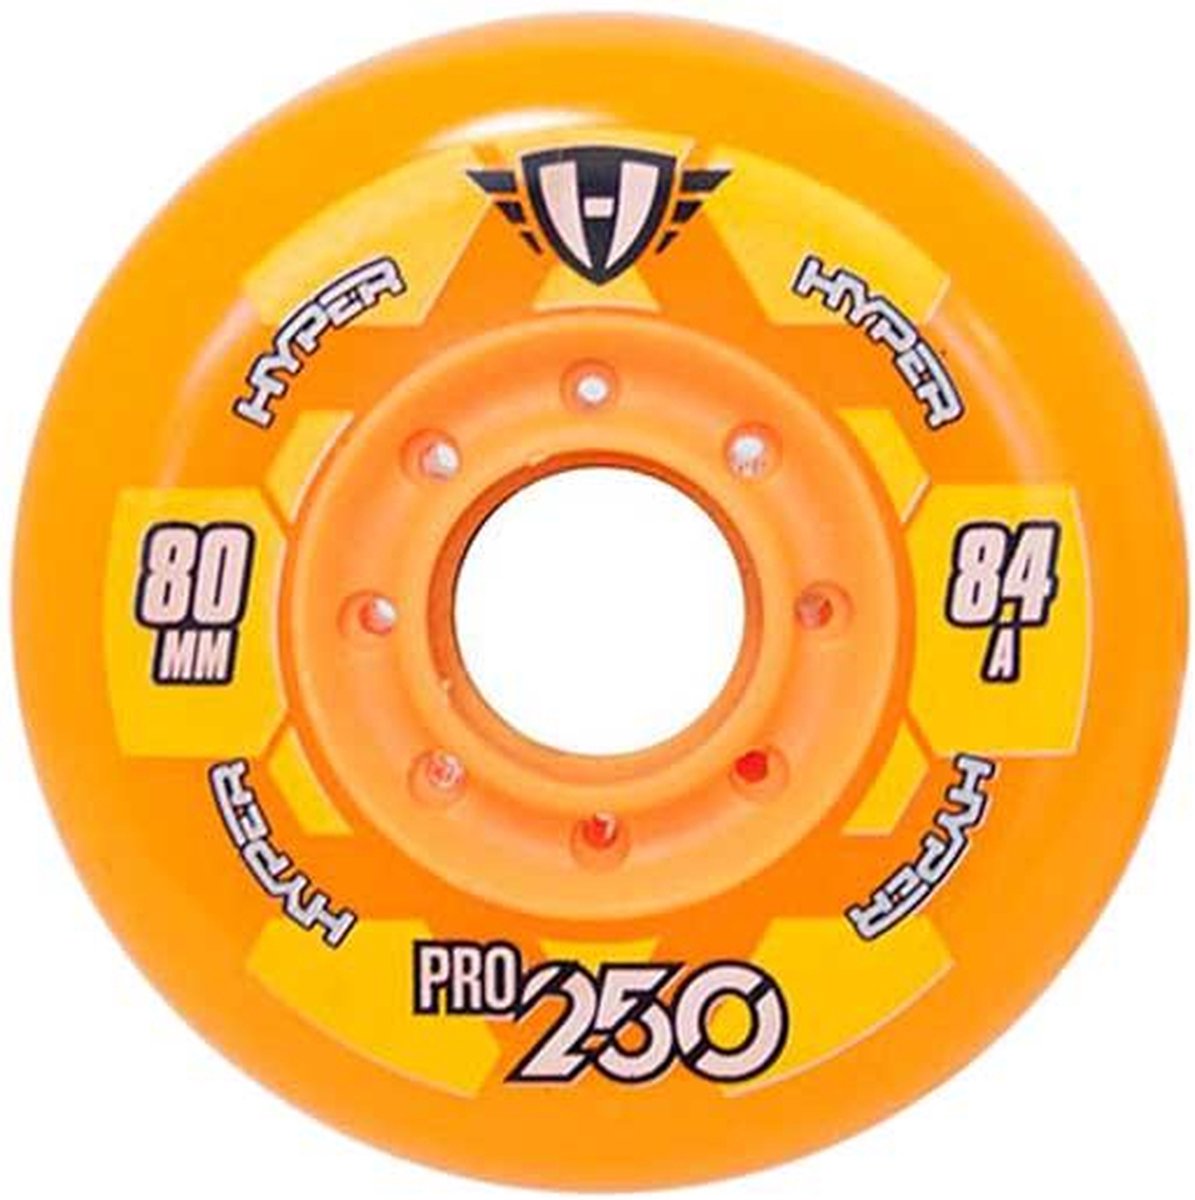 Skate wielen 72 MM Hyper Pro 250 hockeywiel 84A+ oranje